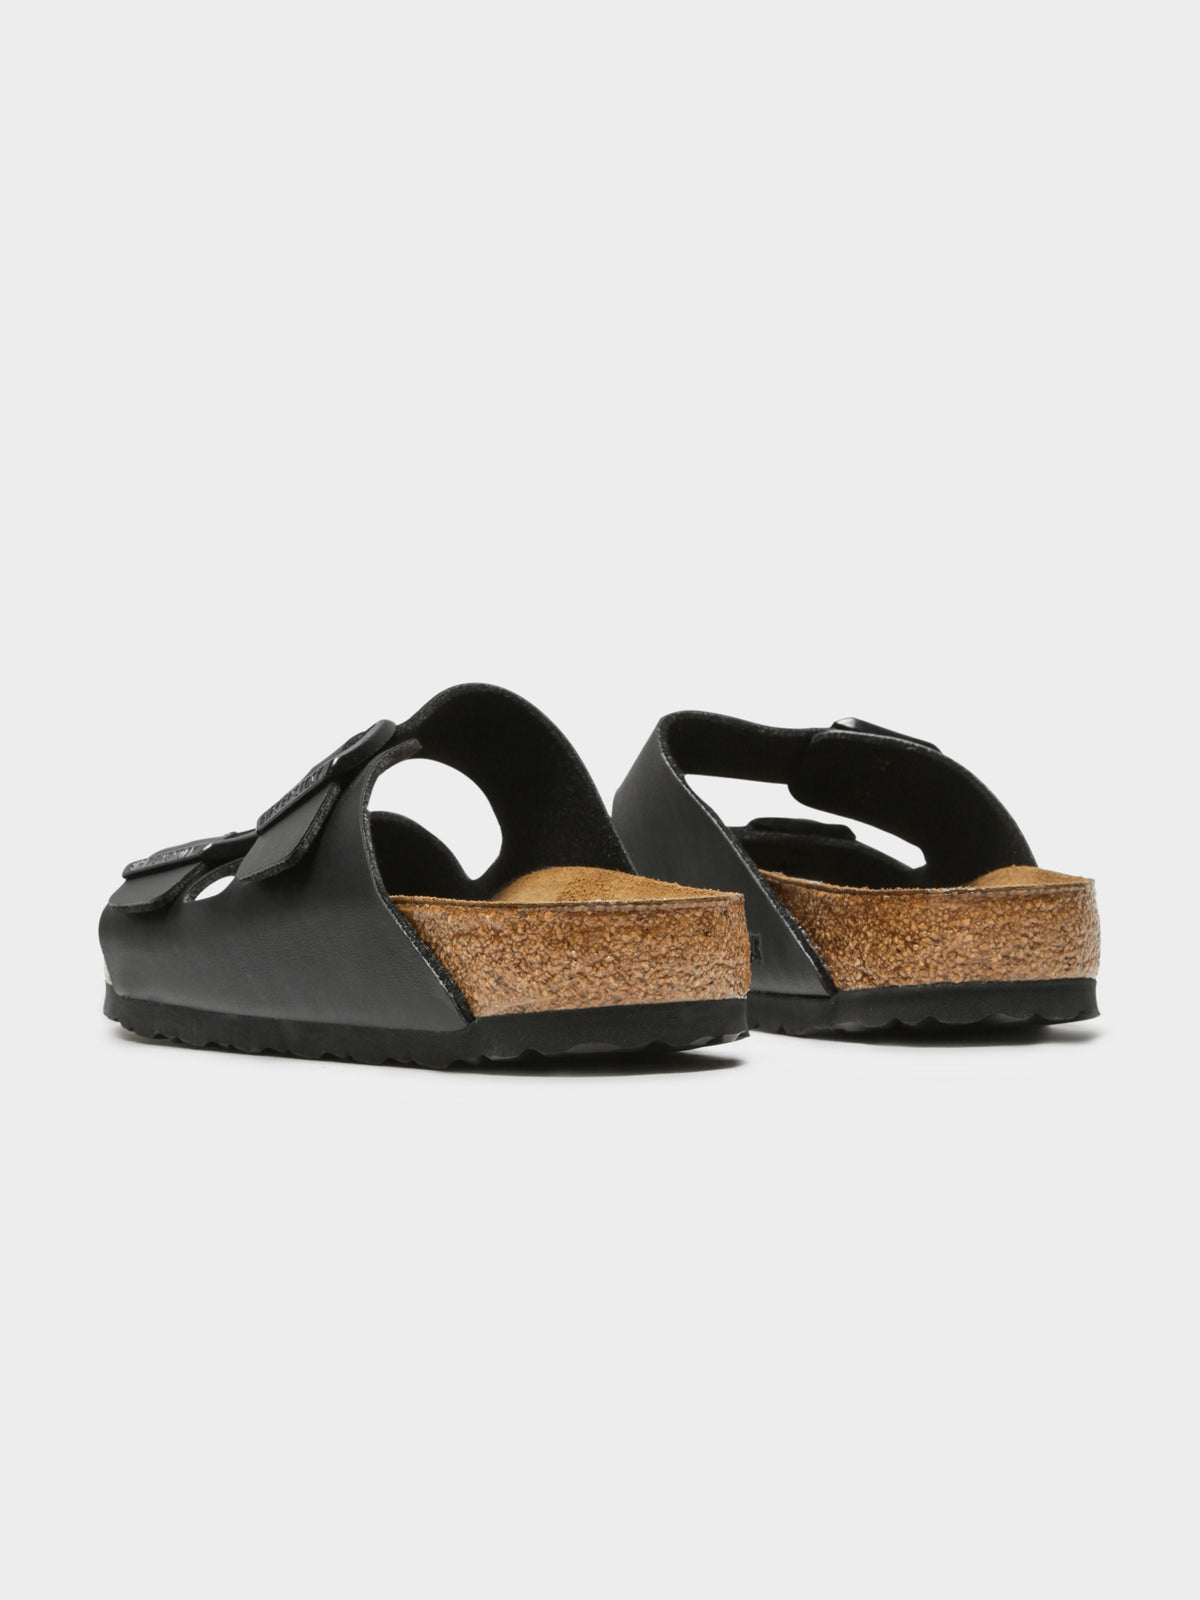 Unisex Arizona Two-Strap Soft Footbed Sandals in Black Birko-Flor ...